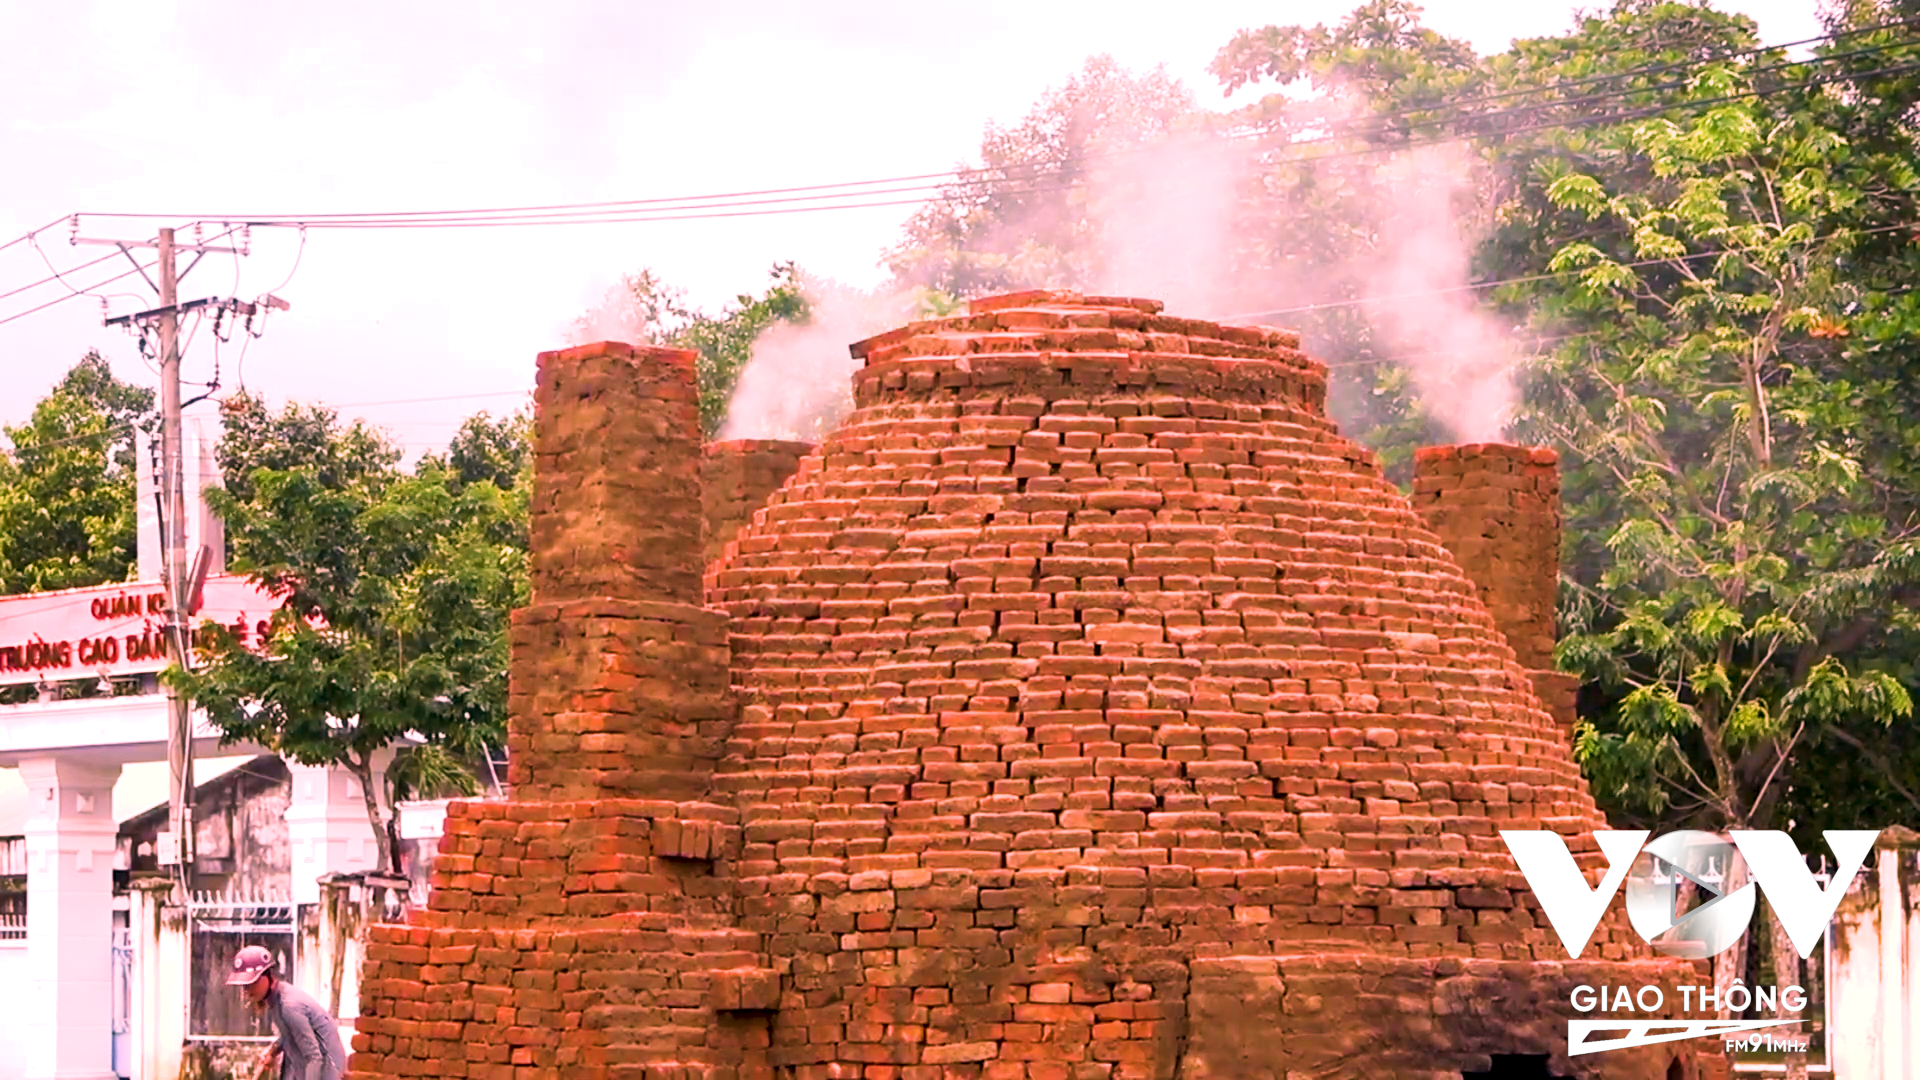 Lò gạch - gốm gợi nhớ đến làng nghề gạch –gốm Mang Thít, từng được mệnh danh là “vương quốc đỏ” của ĐBSCL.